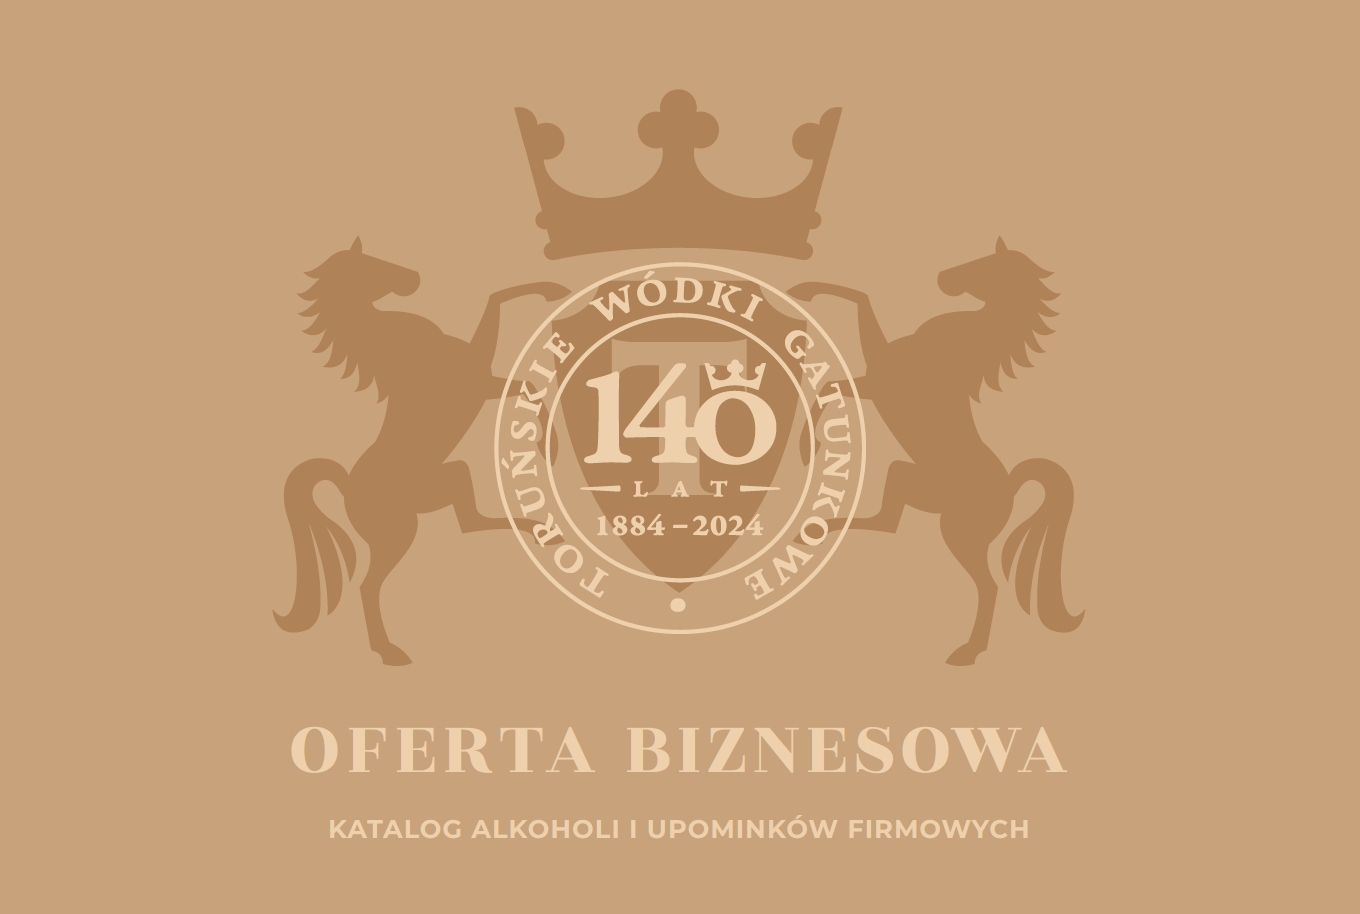 Oferta Biznesowa - Toruńskie Wódki Gatunkowe - producent alkoholi Toruńskie Wódki Gatunkowe